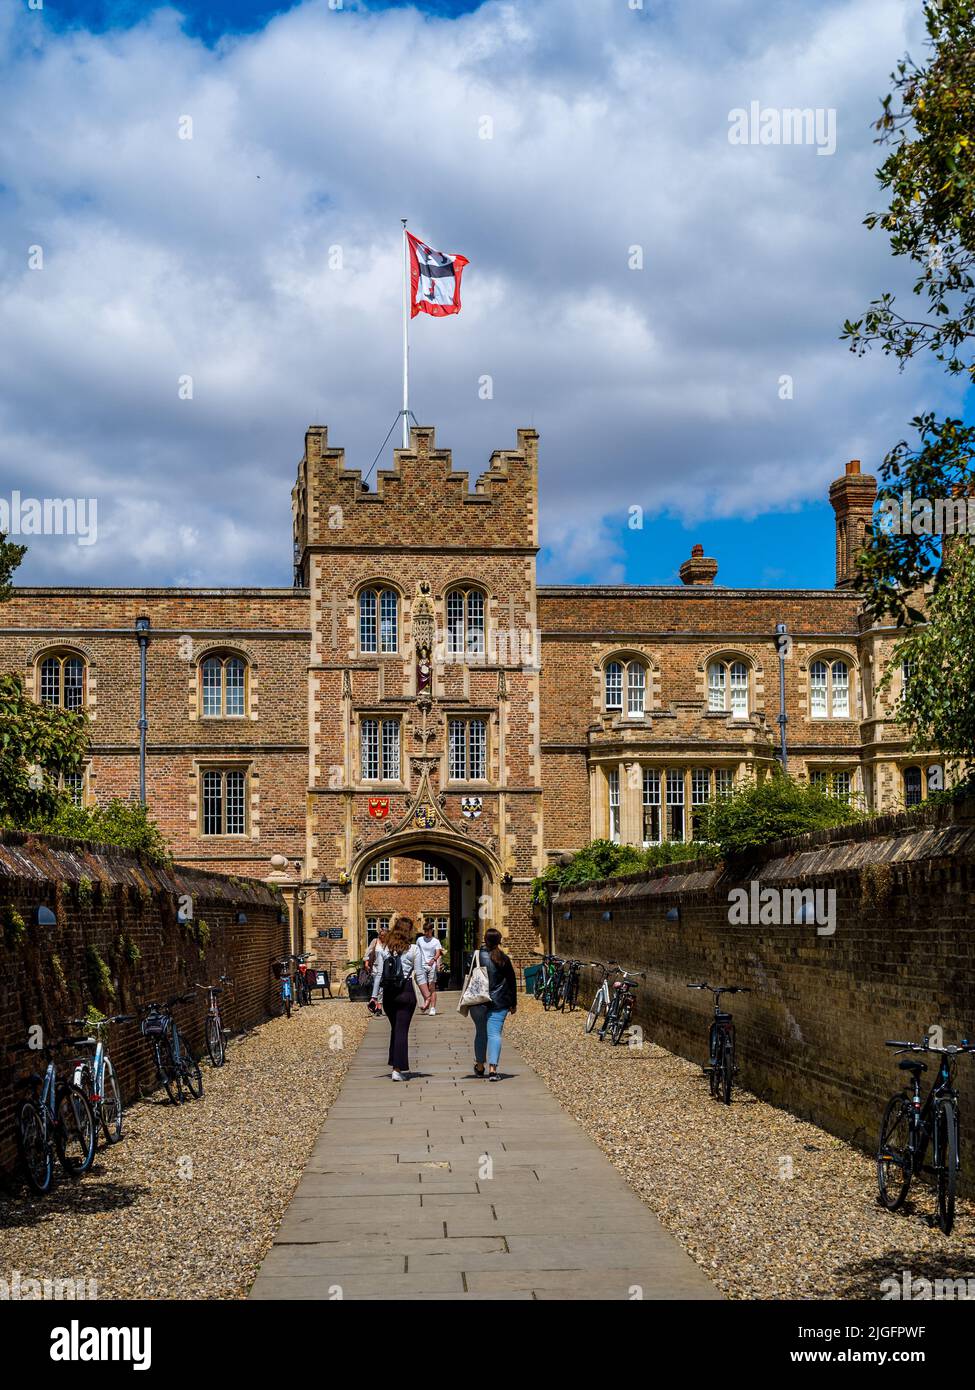 Jesus College Cambridge - passerelle d'entrée de la porte principale, connue sous le nom de cheminée, au Jesus College, qui fait partie de l'Université de Cambridge. Fondée en 1496. Banque D'Images